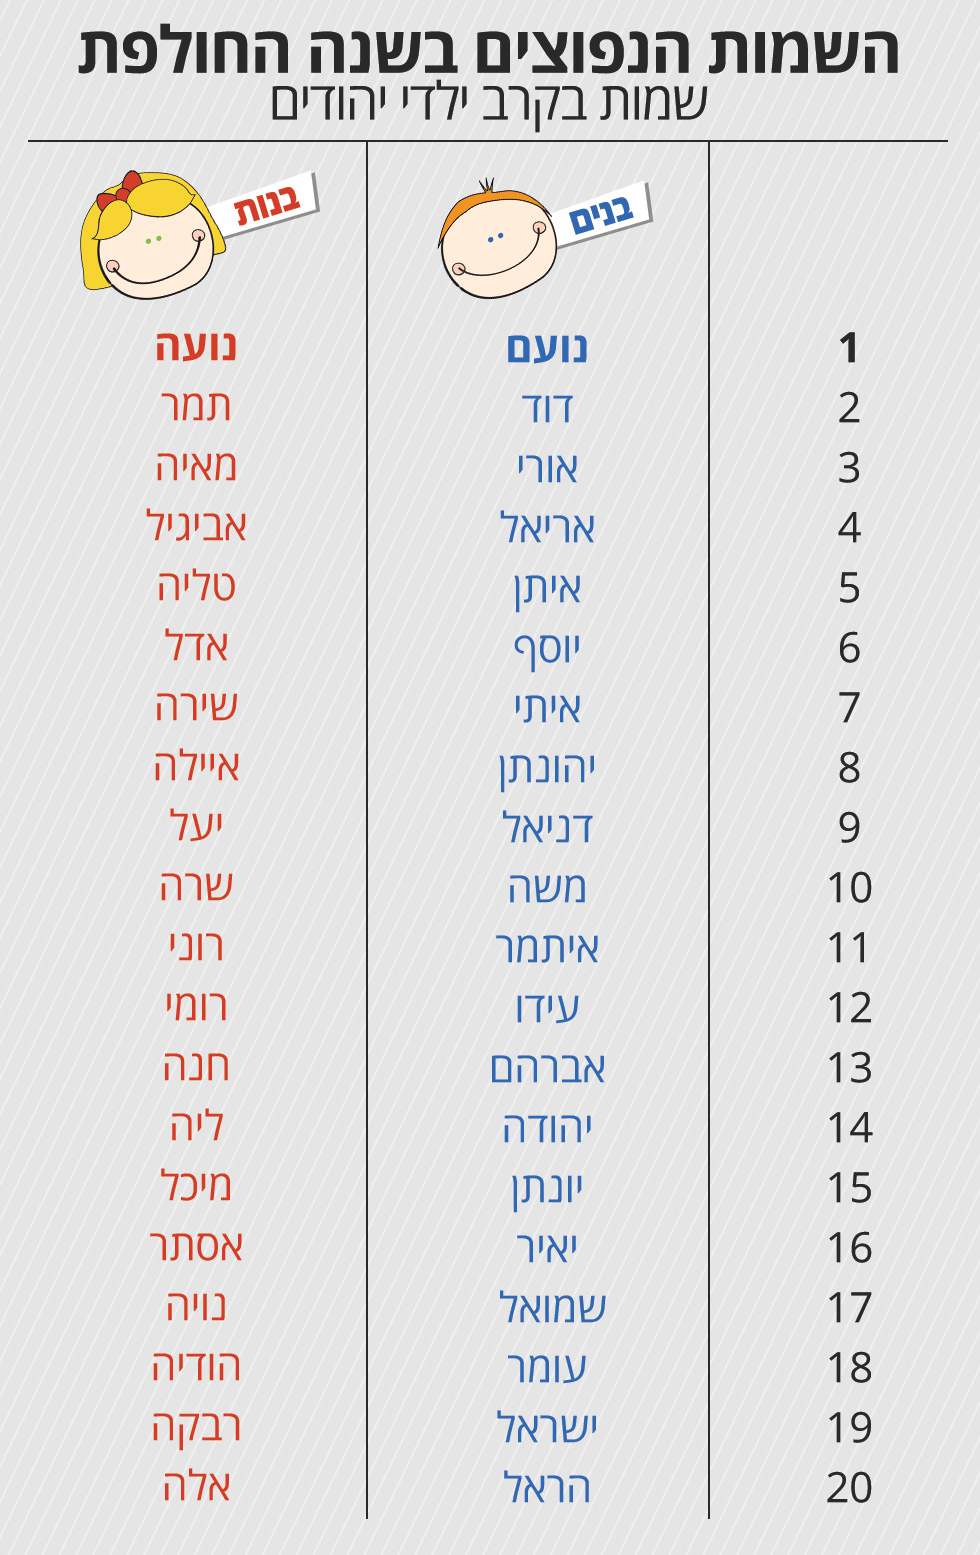 השמות הנפוצים בקרב האוכלוסייה היהודית ()